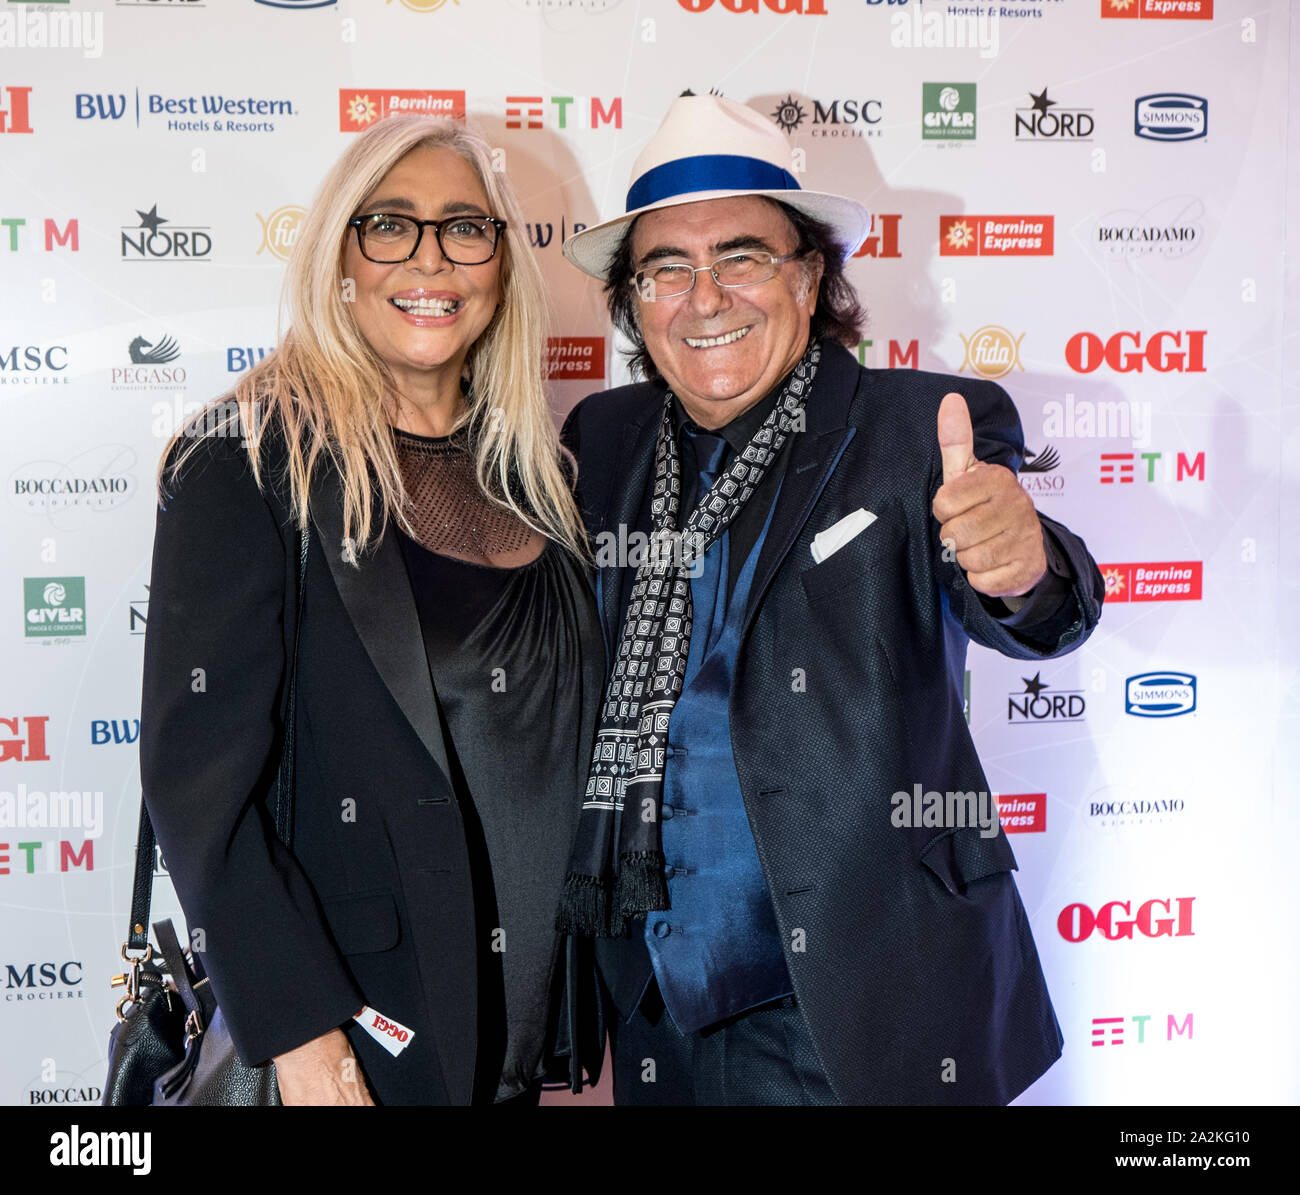 Mara Venier and Albano Carrisi attend the OGGI magazine's birthday party, at Principe di Savoia Hotel in Milano Stock Photo